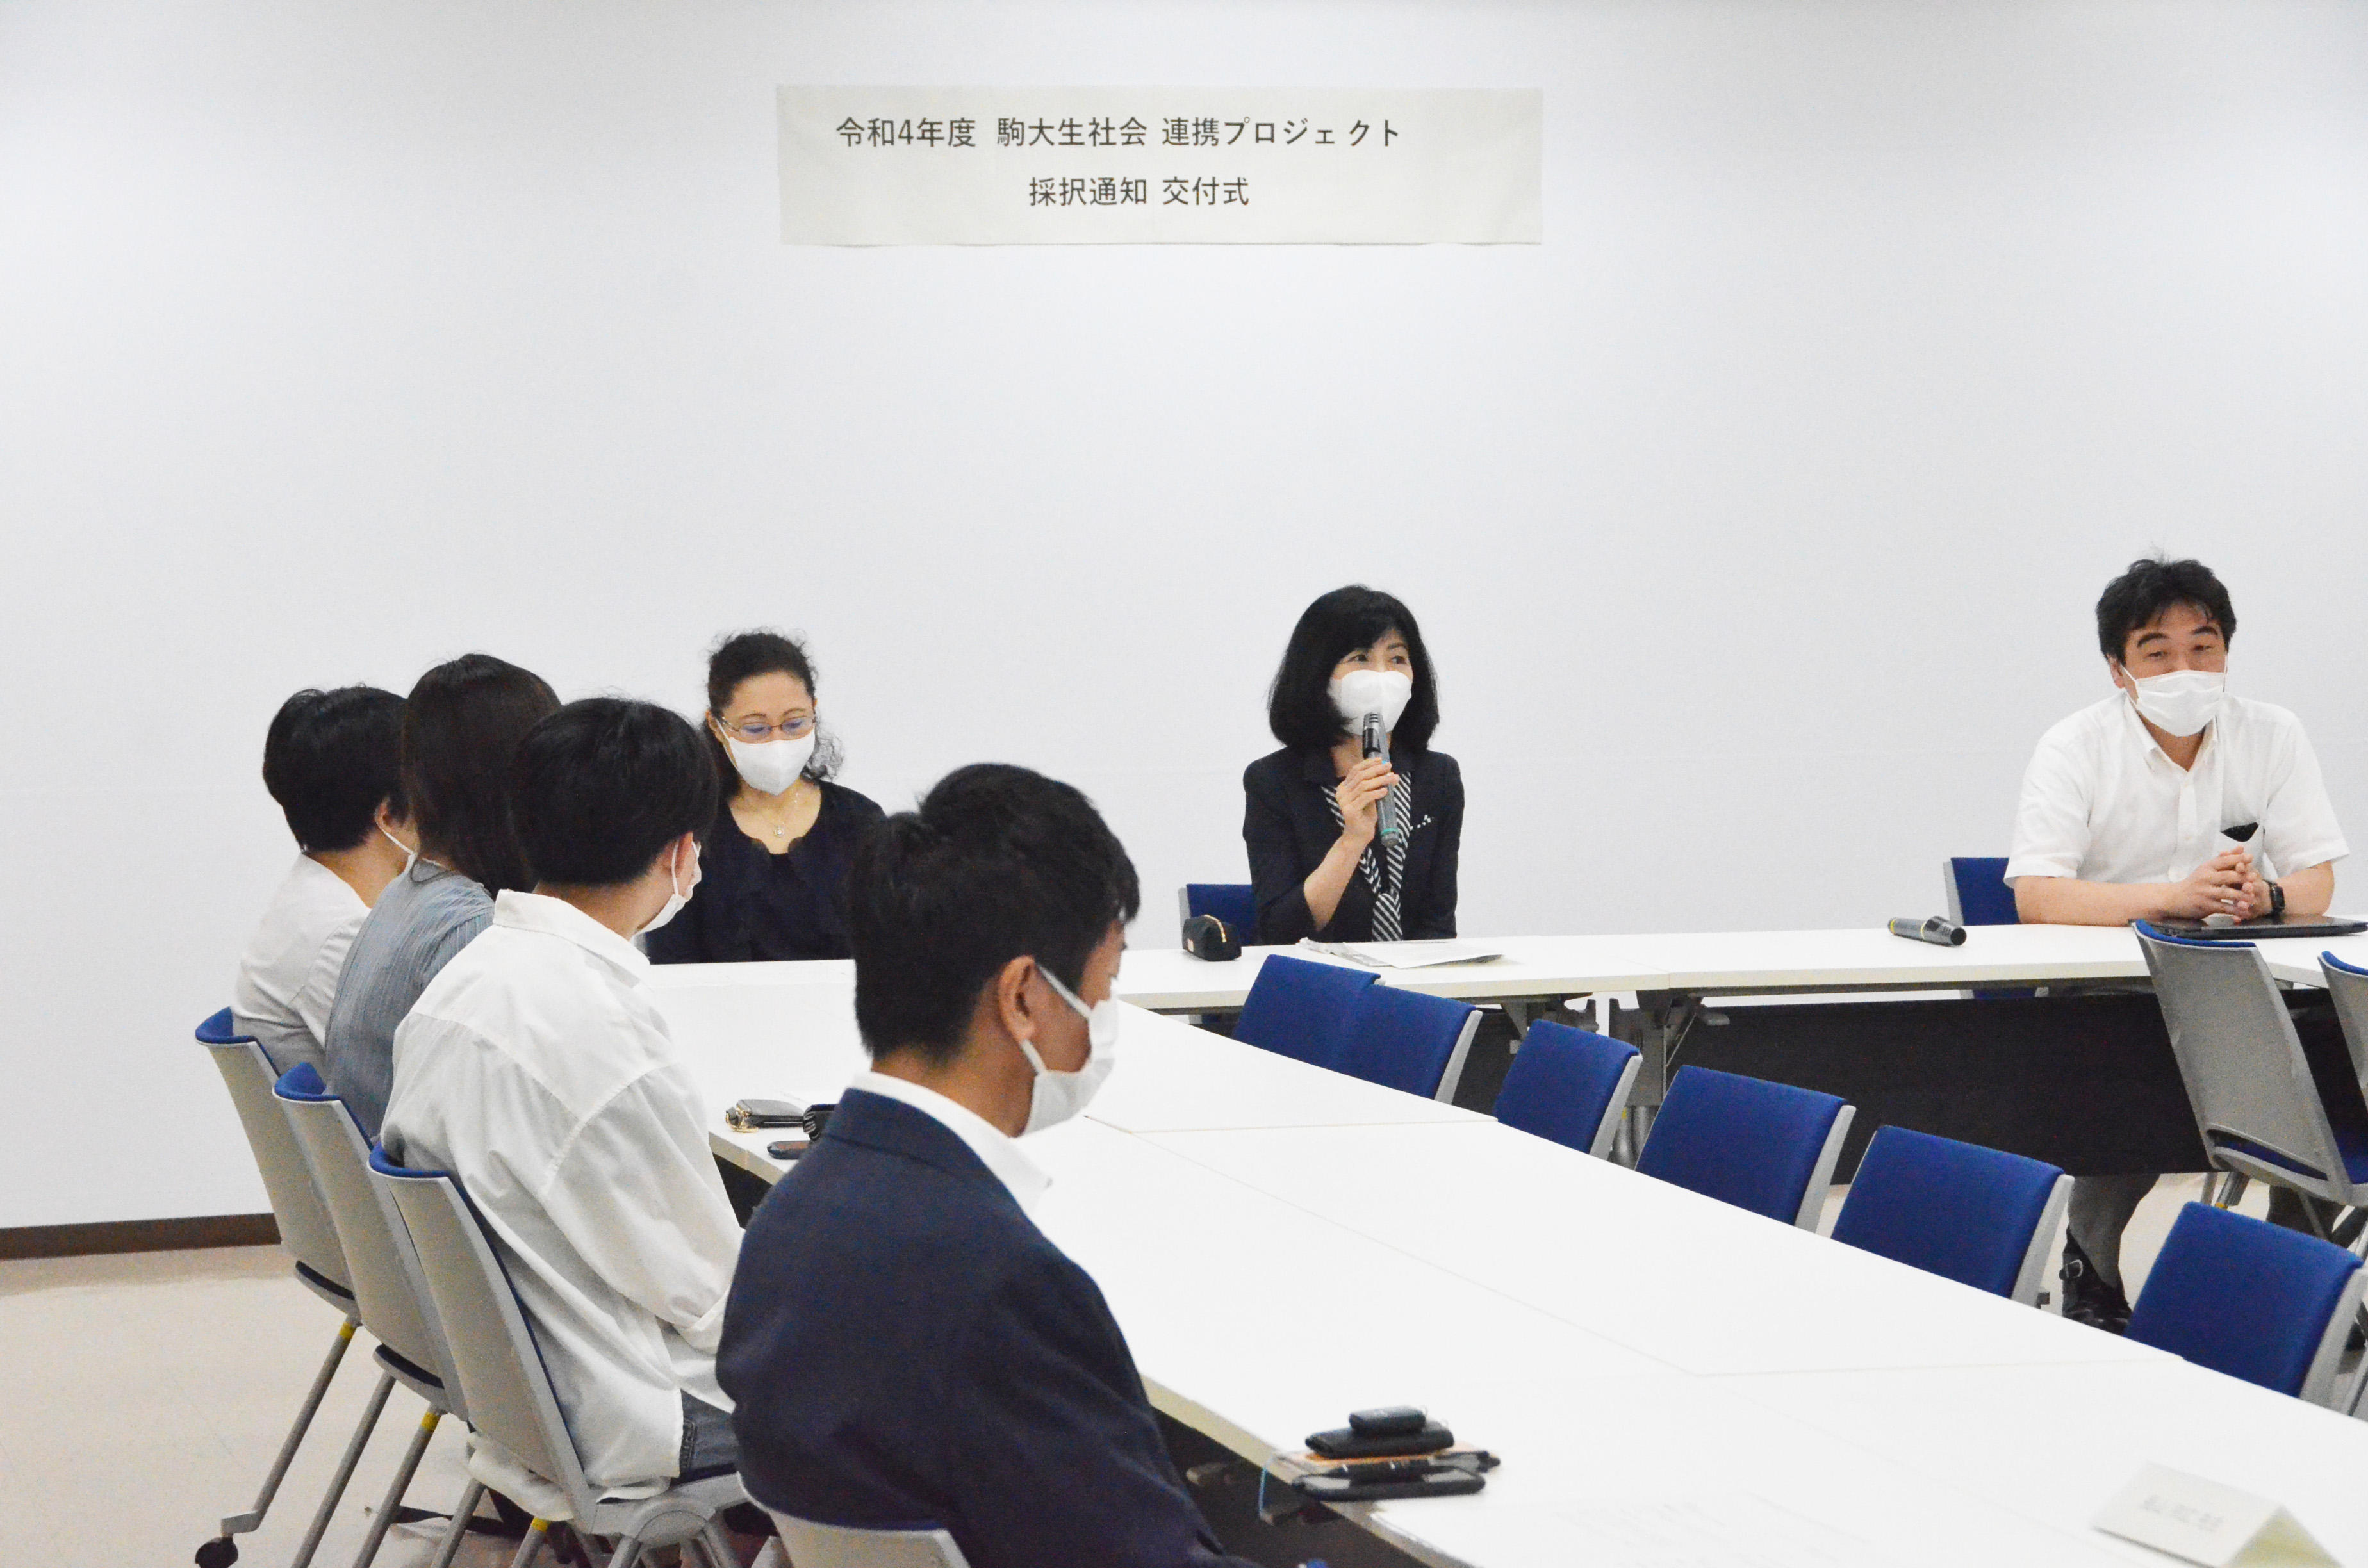 駒澤大学が2022年度より「駒大生社会連携プロジェクト」として学内公募型の助成制度を開始 -- 今年度は7つのプロジェクトが採択